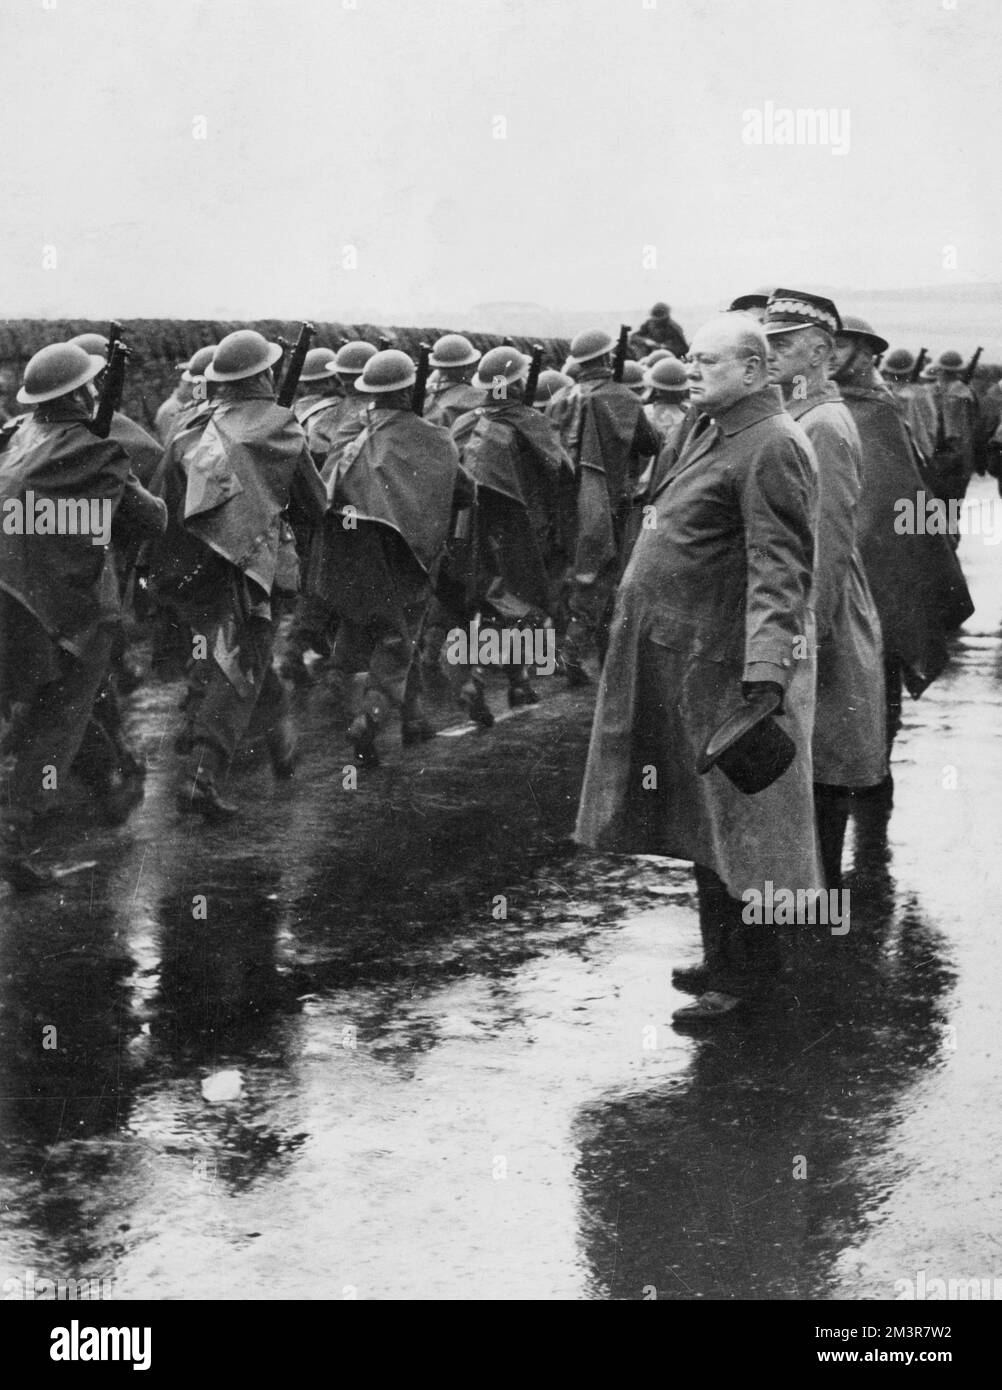 Herr Winston Churchill, trotz des Regens in der Hand, beobachtet eine marschzeit der Truppen während seines Besuchs in den Küstenbezirken Ostschottlands, wo er weitere britische Verteidigungssysteme inspizierte. Mit ihm auf dem Bild kann man Gernal Sikorski sehen, den polnischen Premierminister. 1940 Datum: 1940 Stockfoto